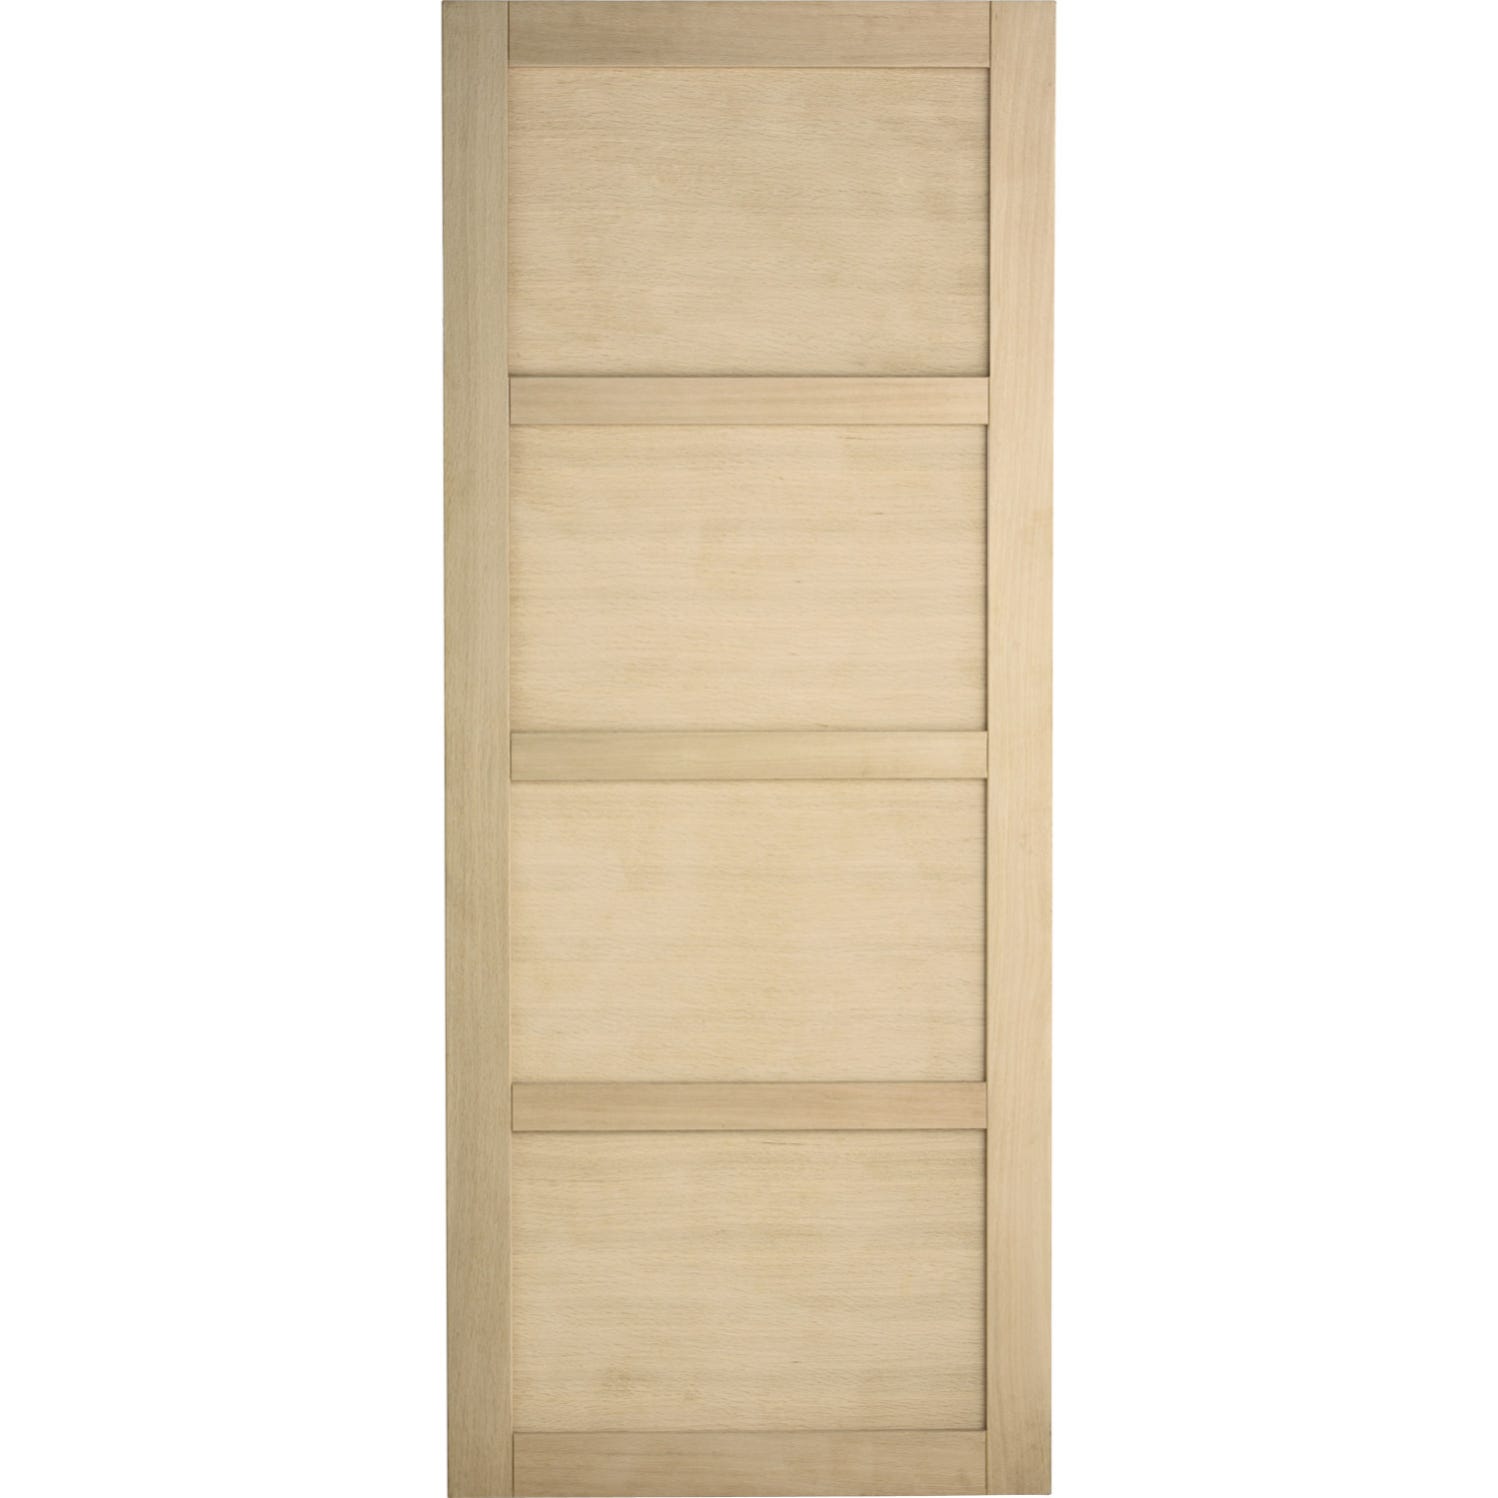 Porte coulissante bois Craie, H.204 x l.73 cm